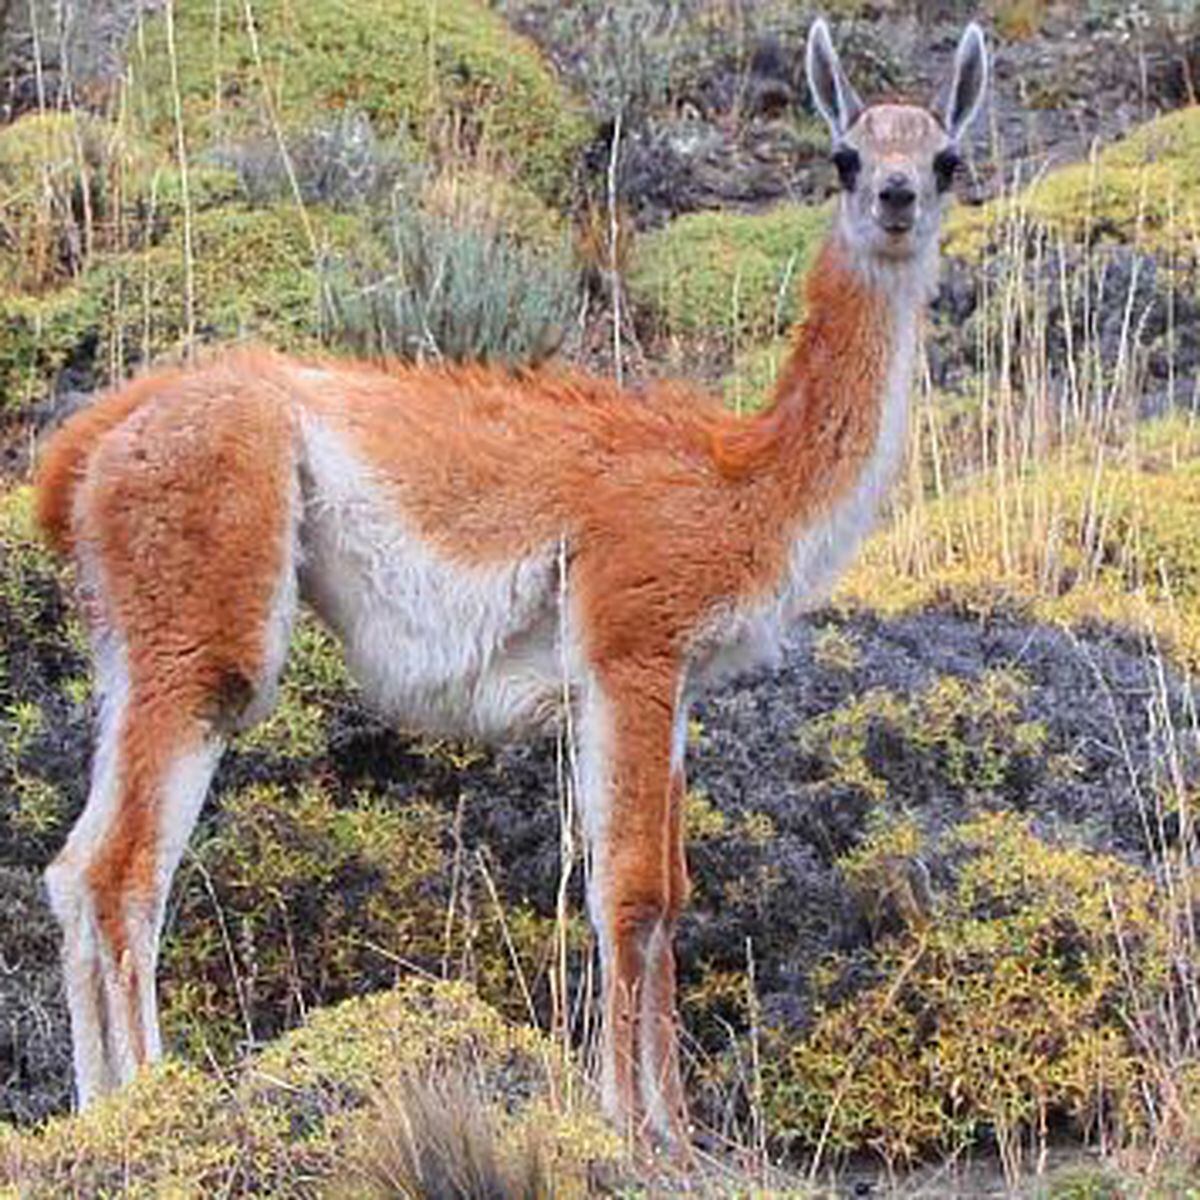 Minagri En Peru Hay 64 Especies En Peligro De Extincion Lima